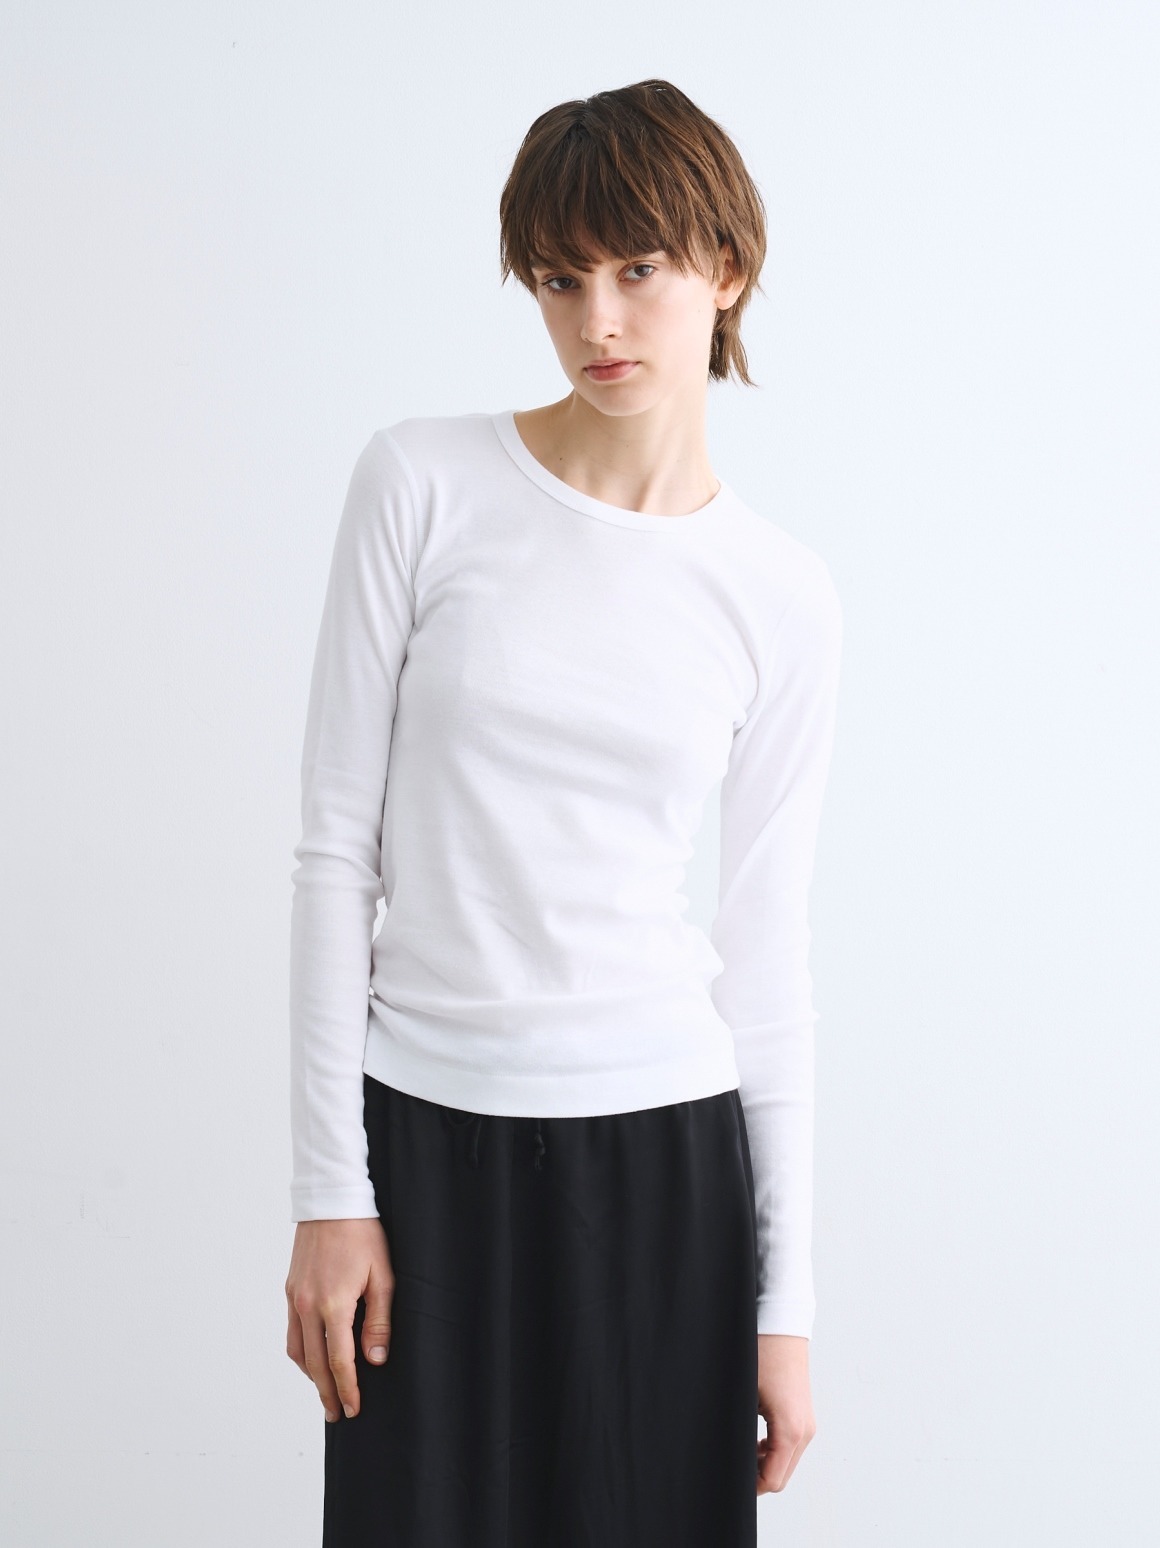 Organic cotton knits l/s alex 詳細画像 white 6